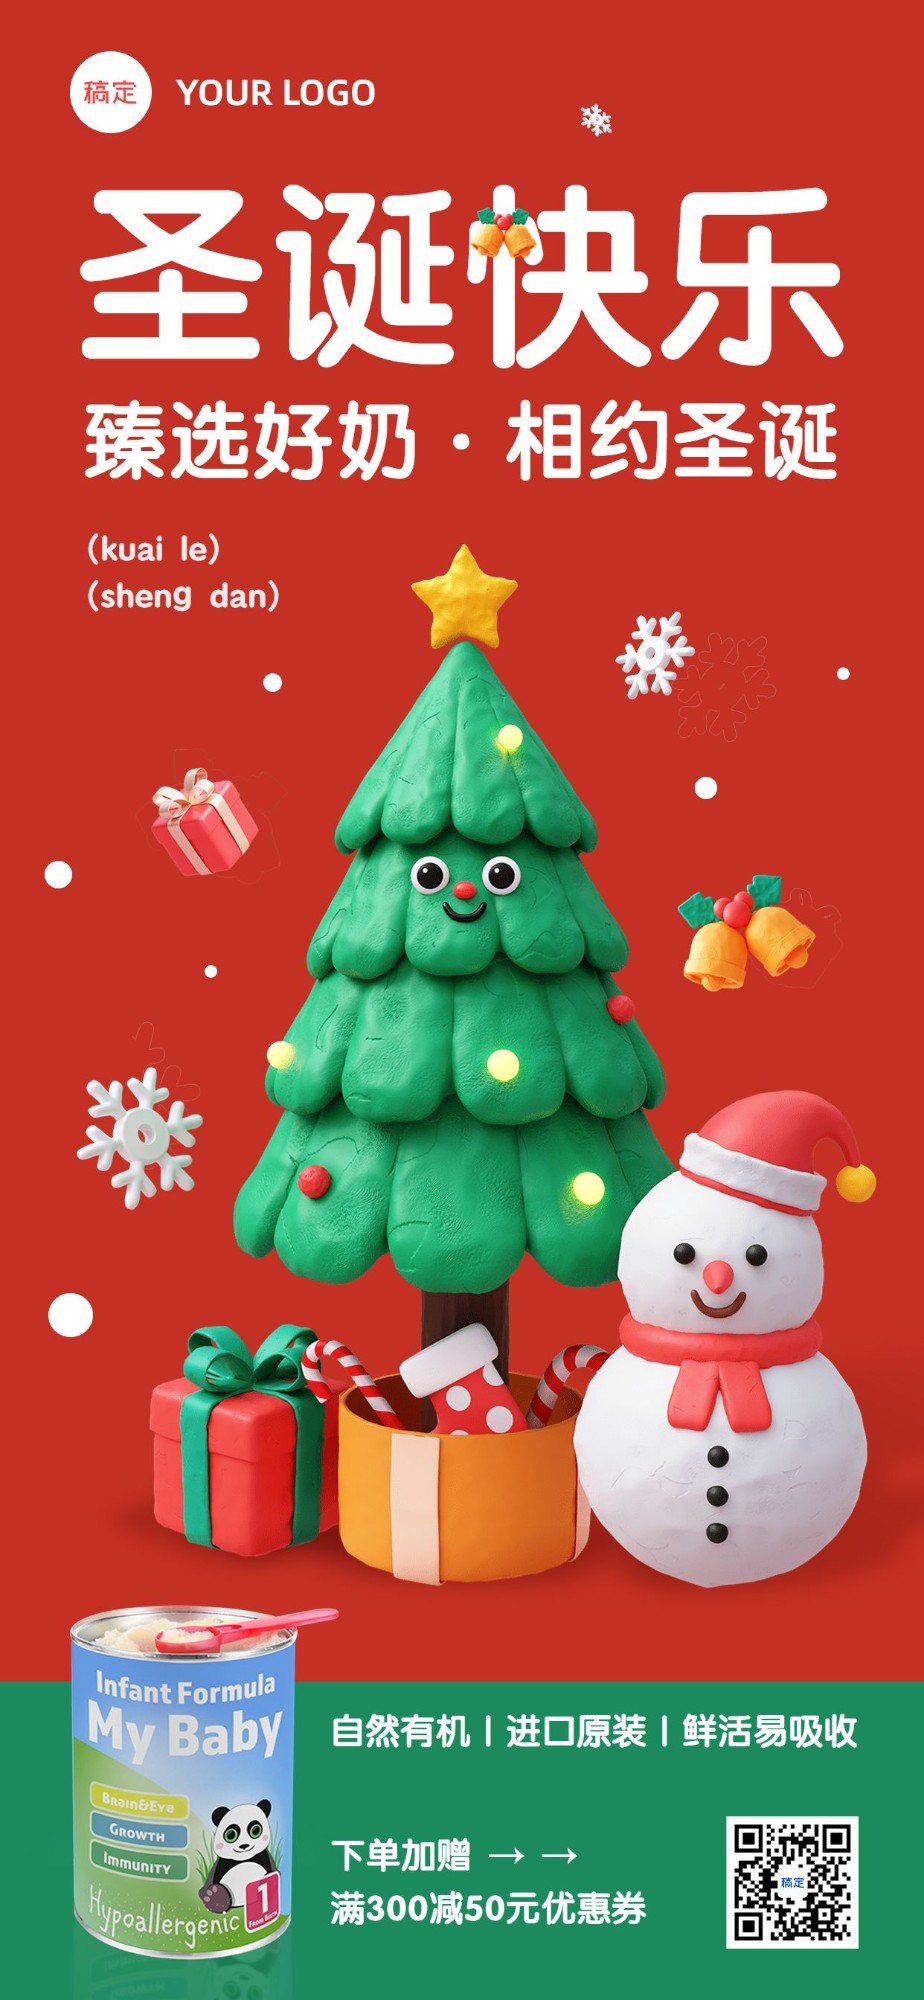 圣诞节母婴微商产品营销活动全屏竖版海报3D粘土圣诞树雪人预览效果